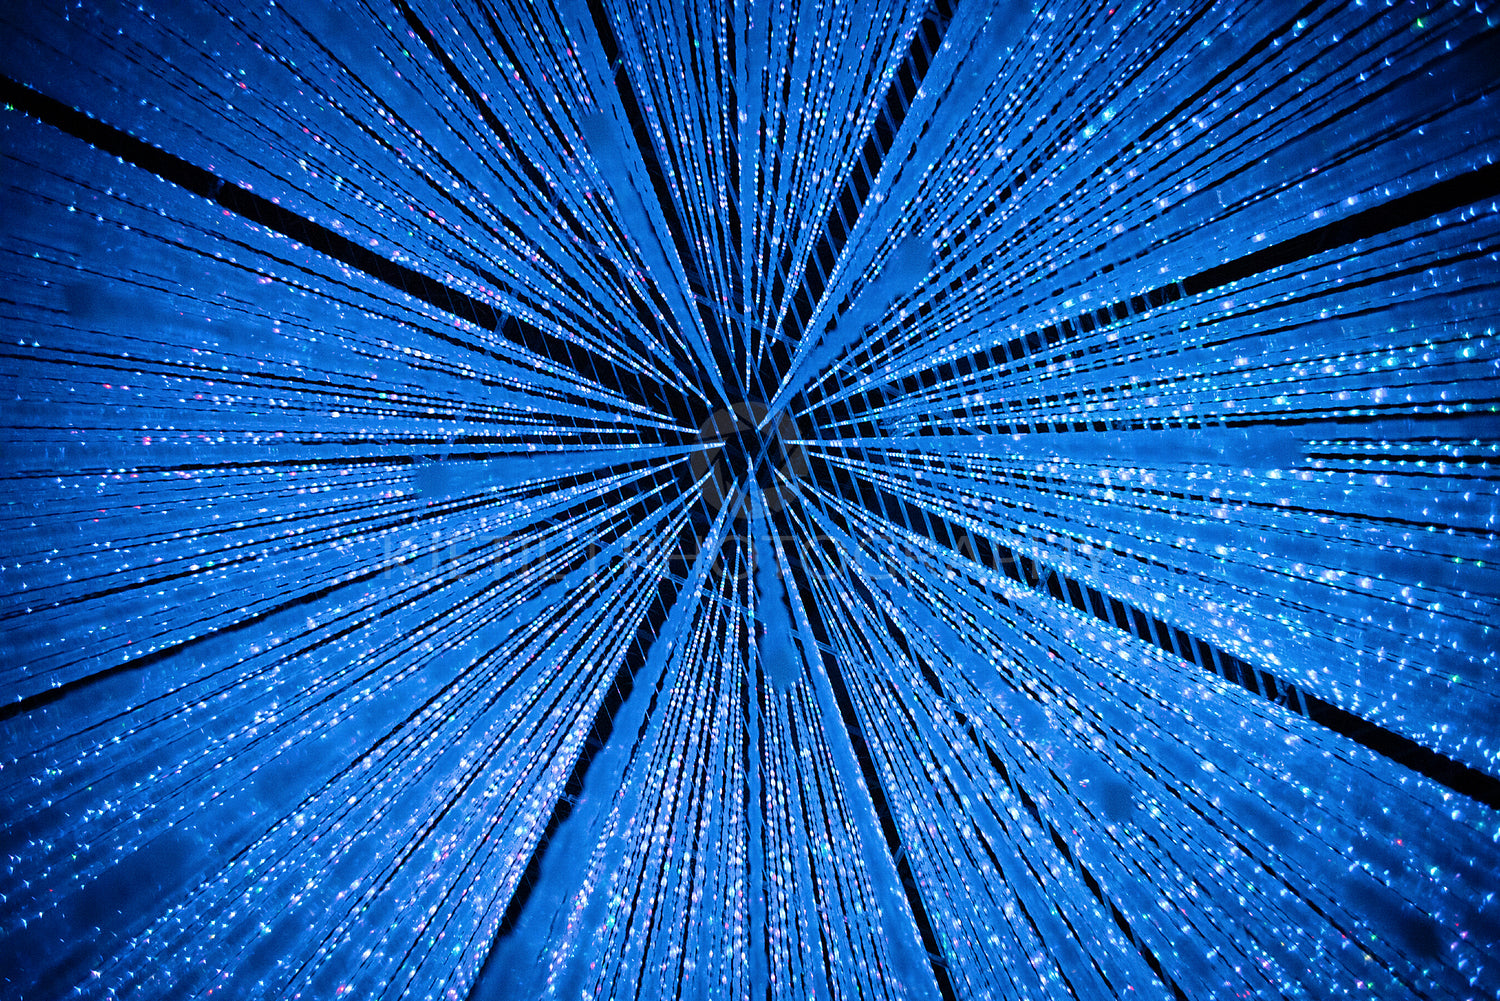 Futuristic Illuminated blue lighting decoration in museum